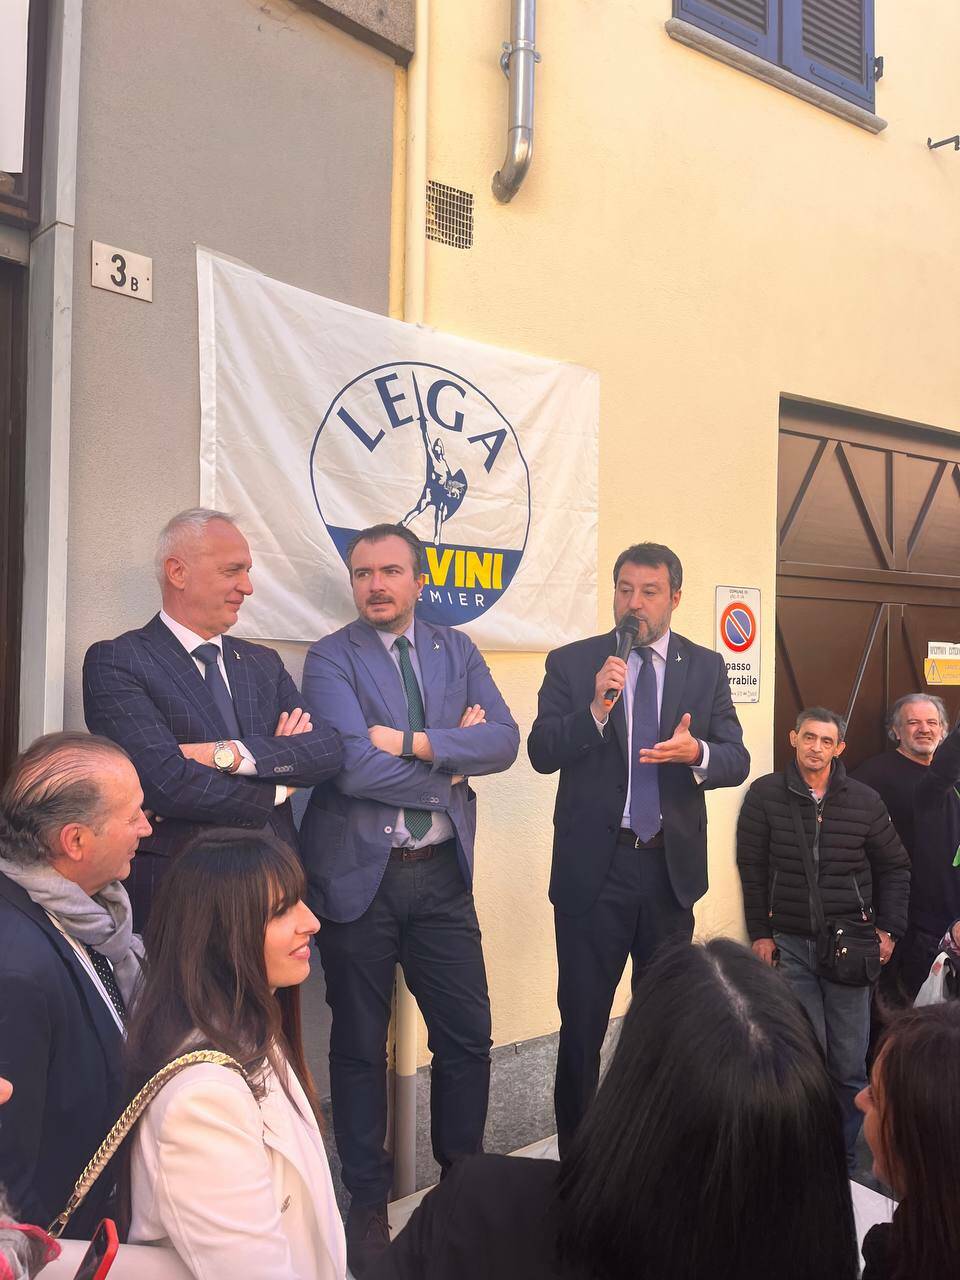 Salvini in Granda